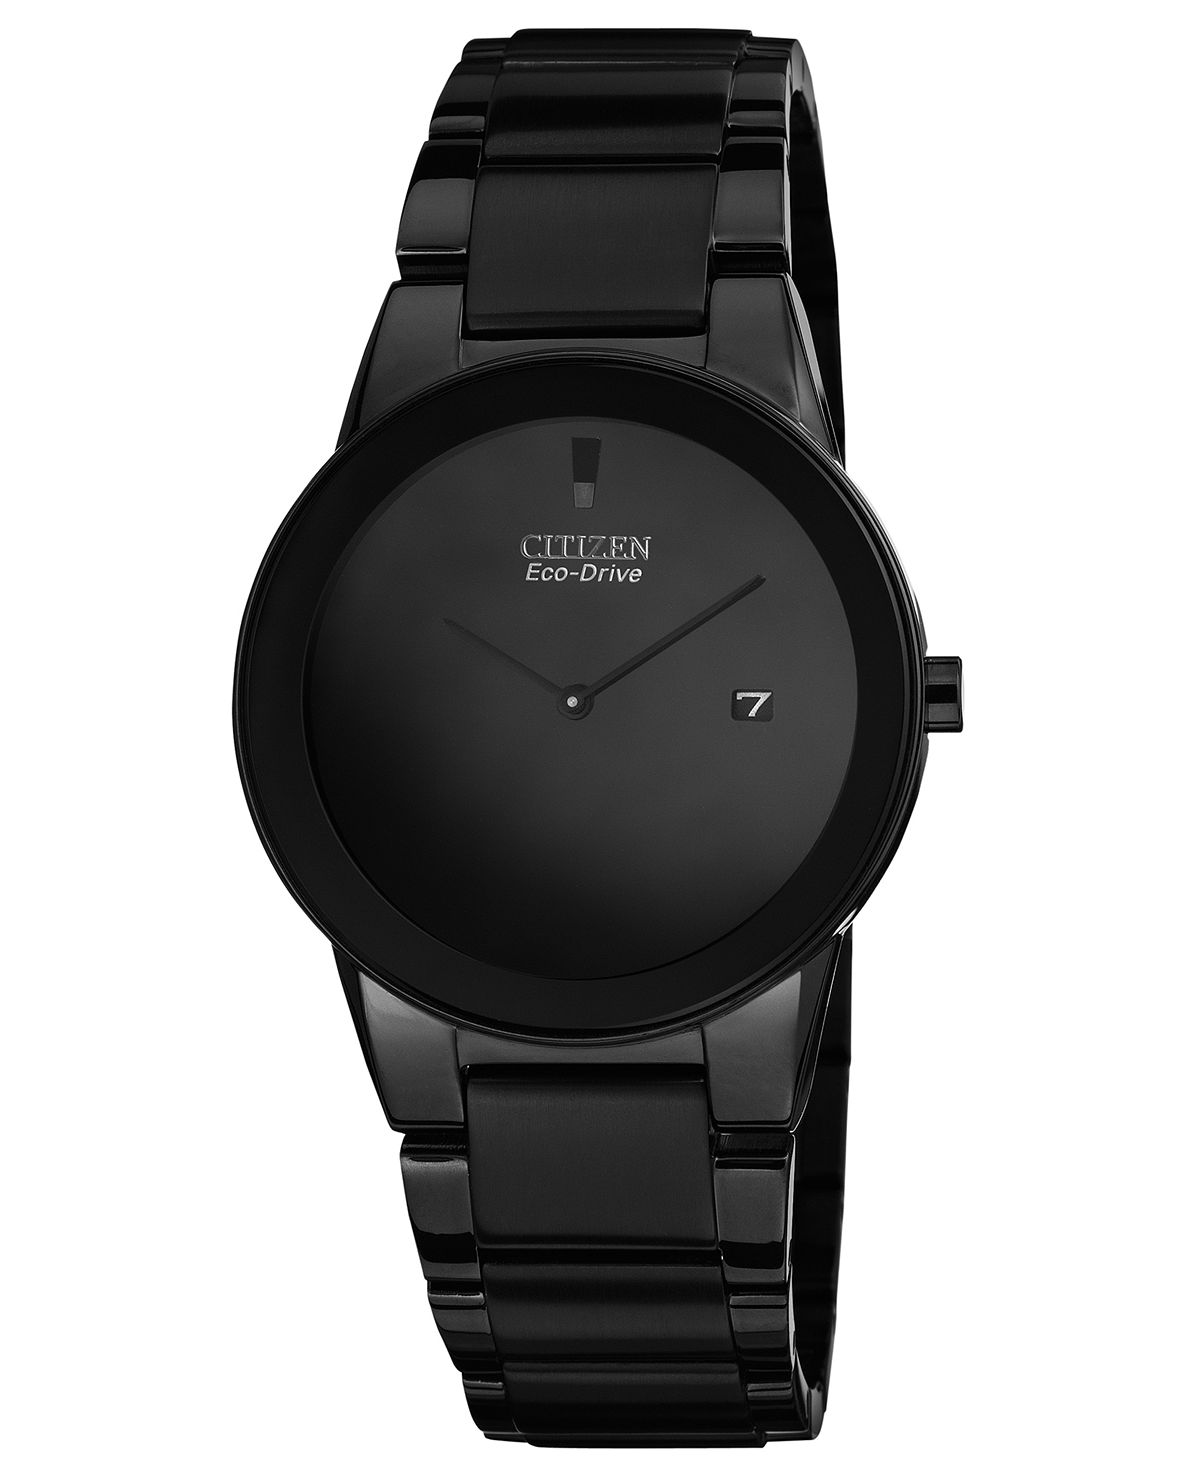 Мужские часы Eco-Drive Axiom, черные часы-браслет из нержавеющей стали с ионным покрытием, 40 мм, AU1065-58E Citizen часы citizen ca0295 58e